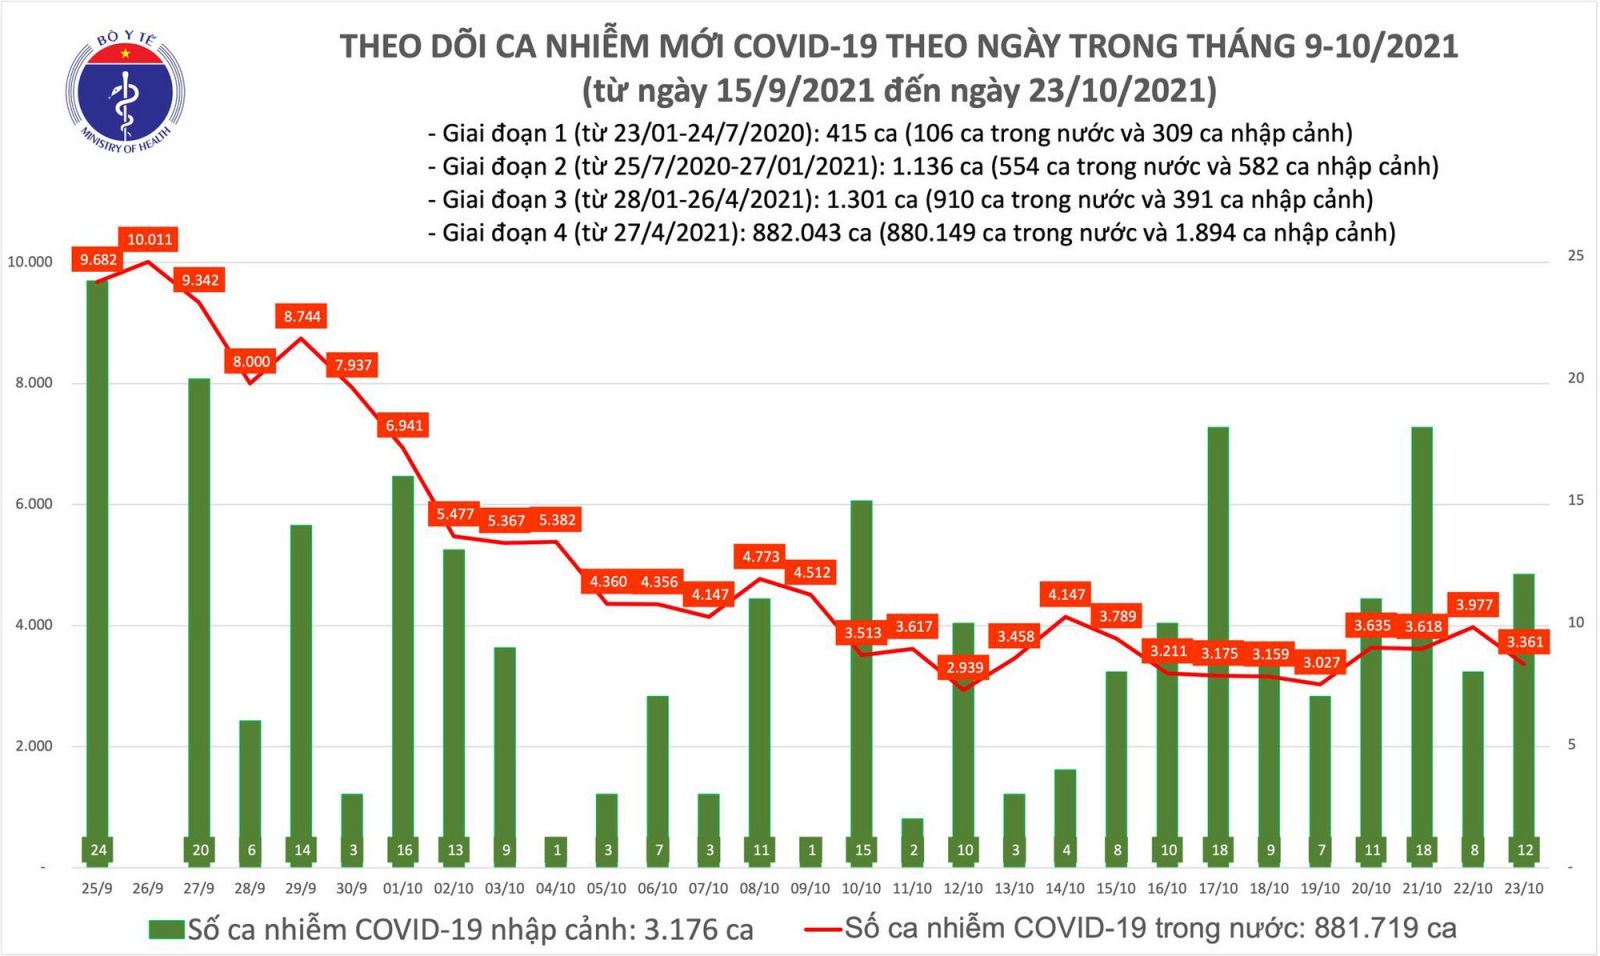 Ngày 23/10: Có 3.373 ca mắc COVID-19 tại 47 tỉnh, thành; giảm 616 ca so với hôm qua